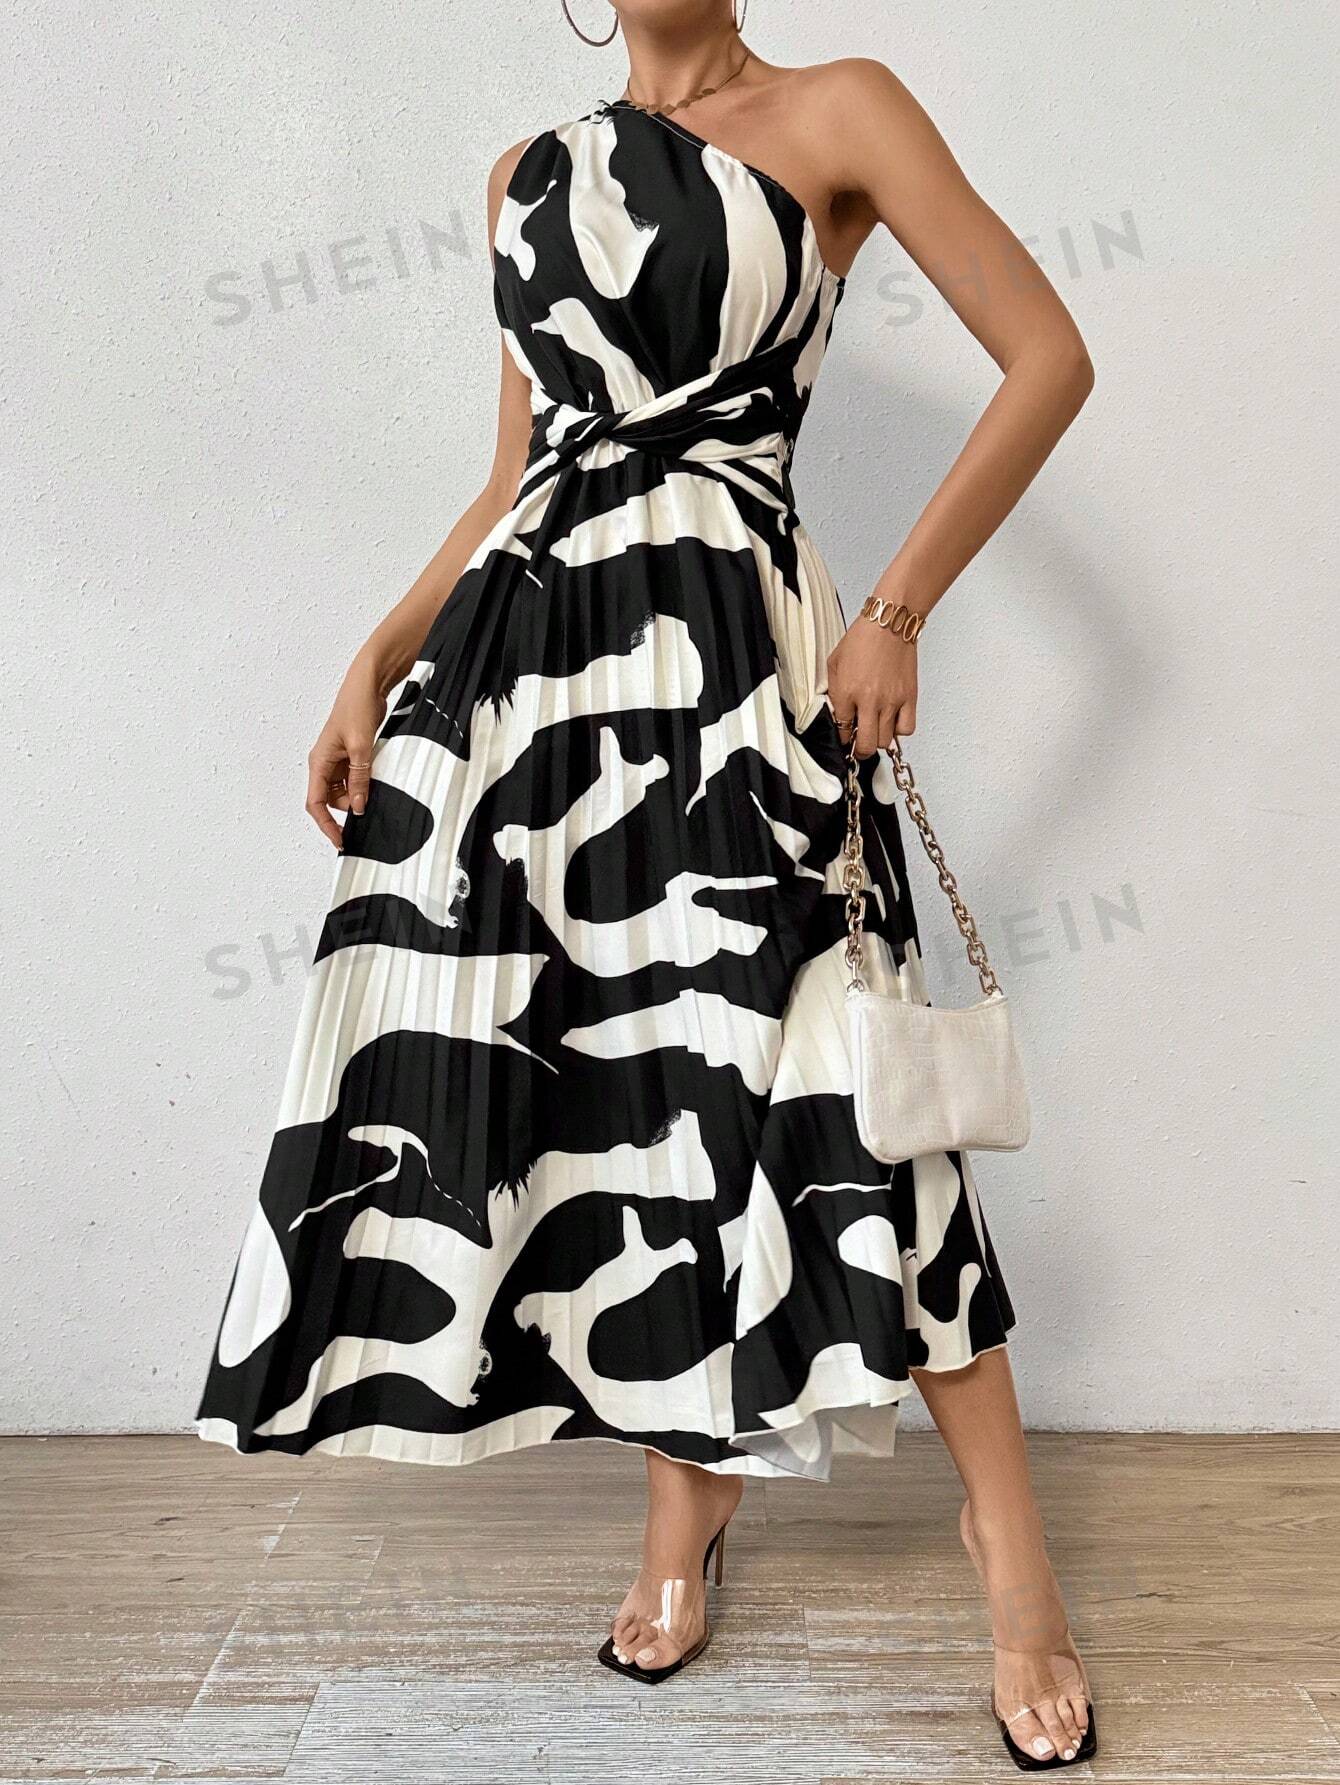 SHEIN Privé Женское платье без рукавов на одно плечо с принтом и плиссированным подолом, черное и белое